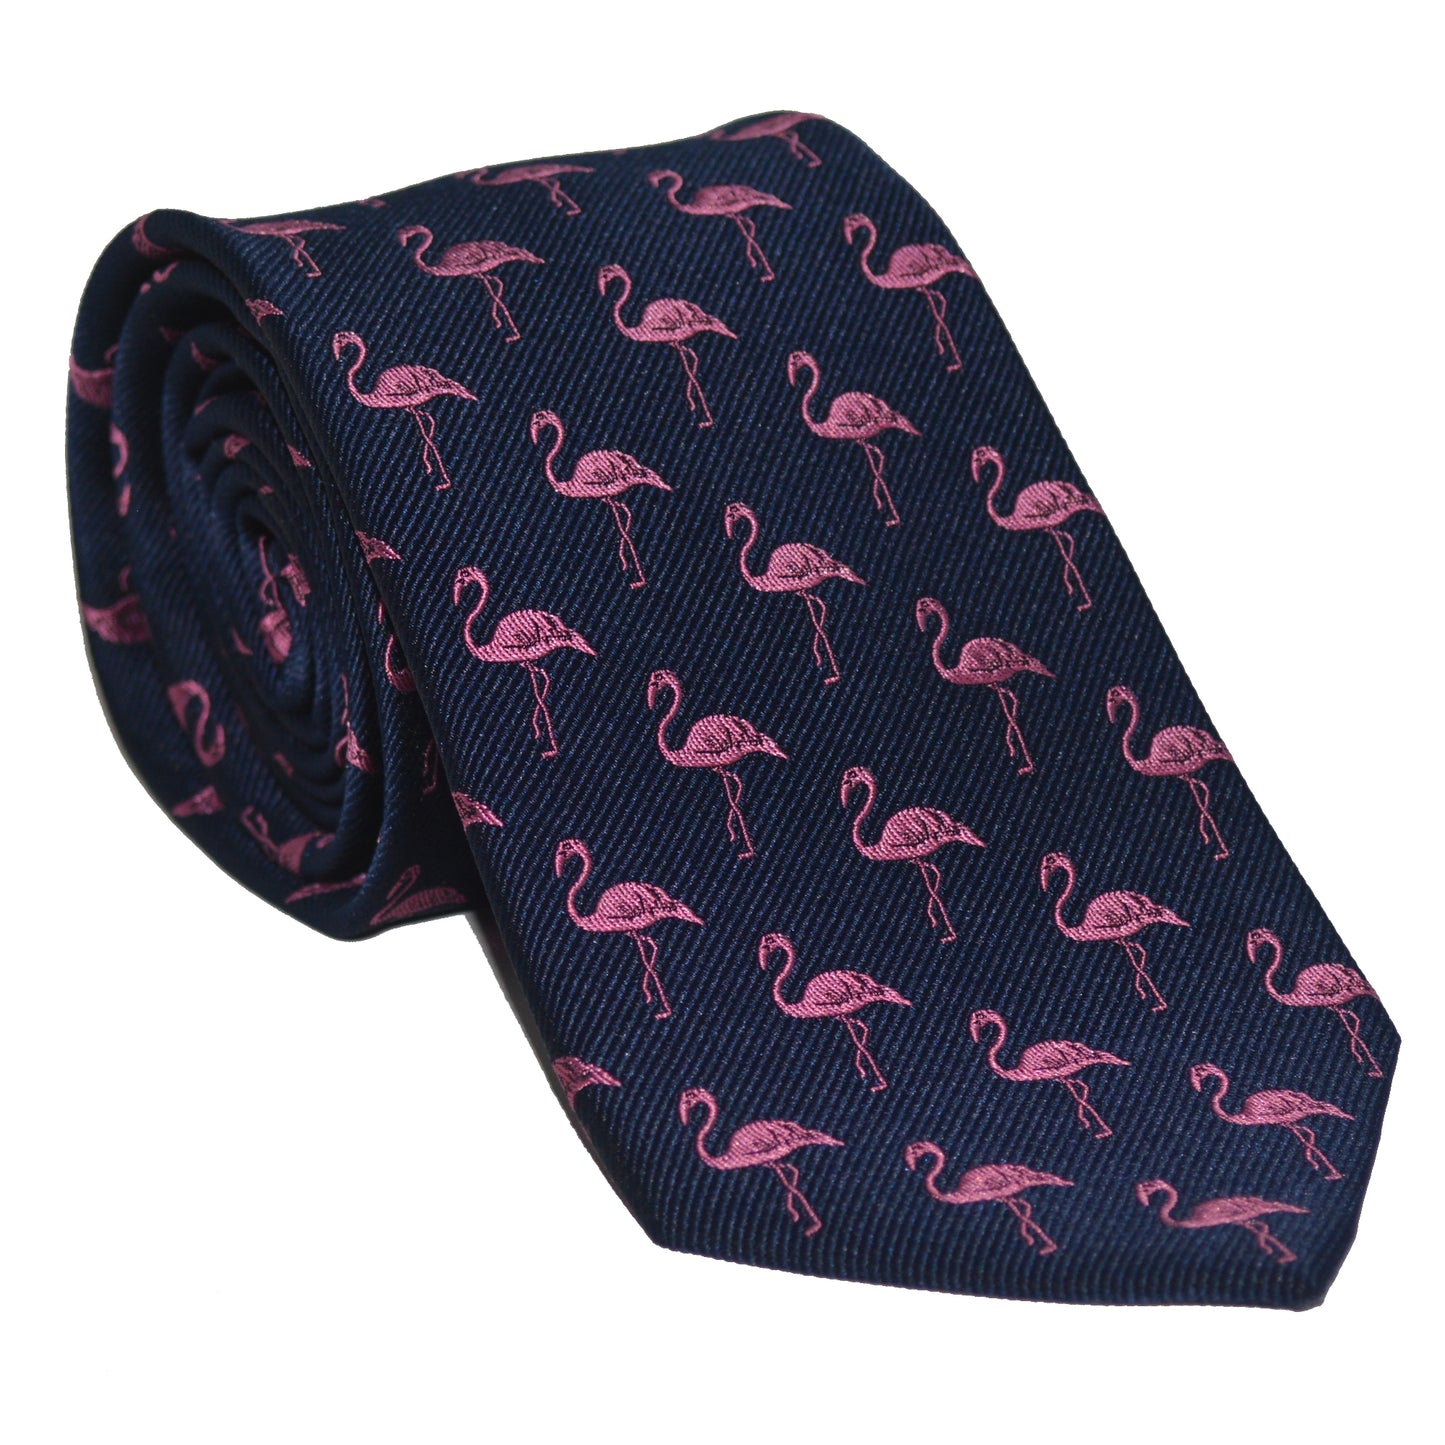 Flamingo Necktie - Pink on Navy, Woven Silk - SummerTies